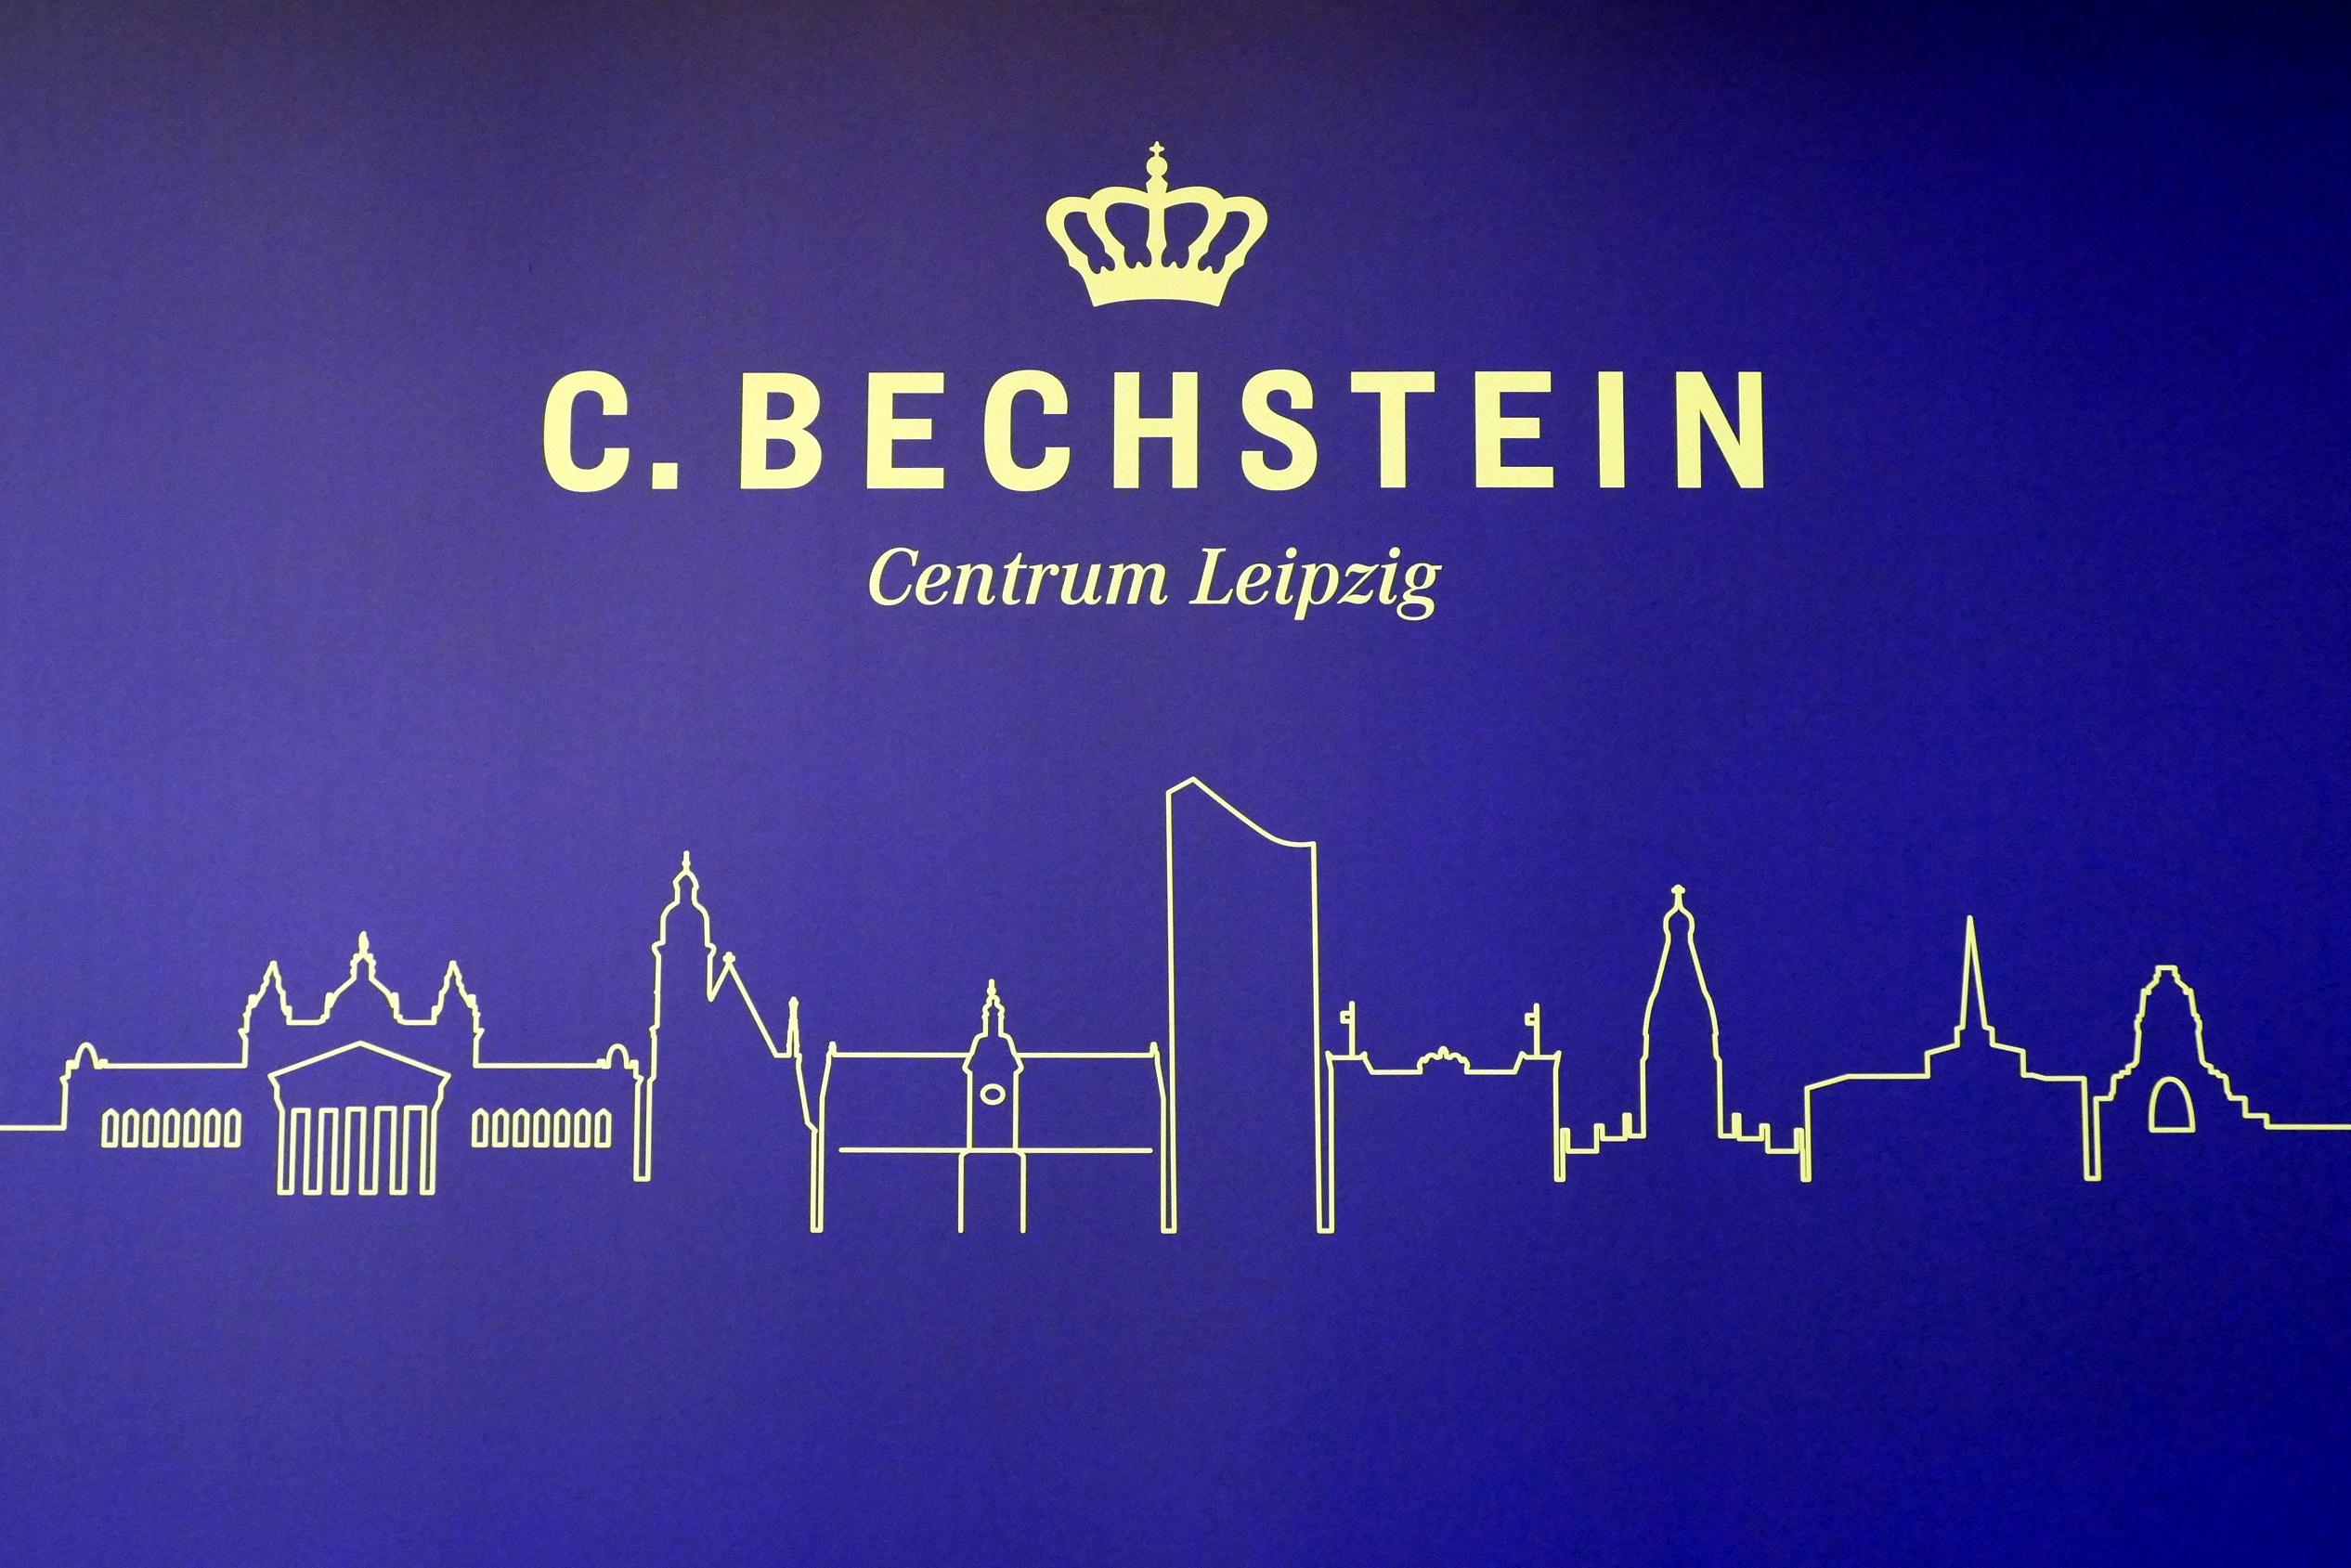 Herzlich willkommen in Ihrem C. Bechstein Centrum Leipzig.